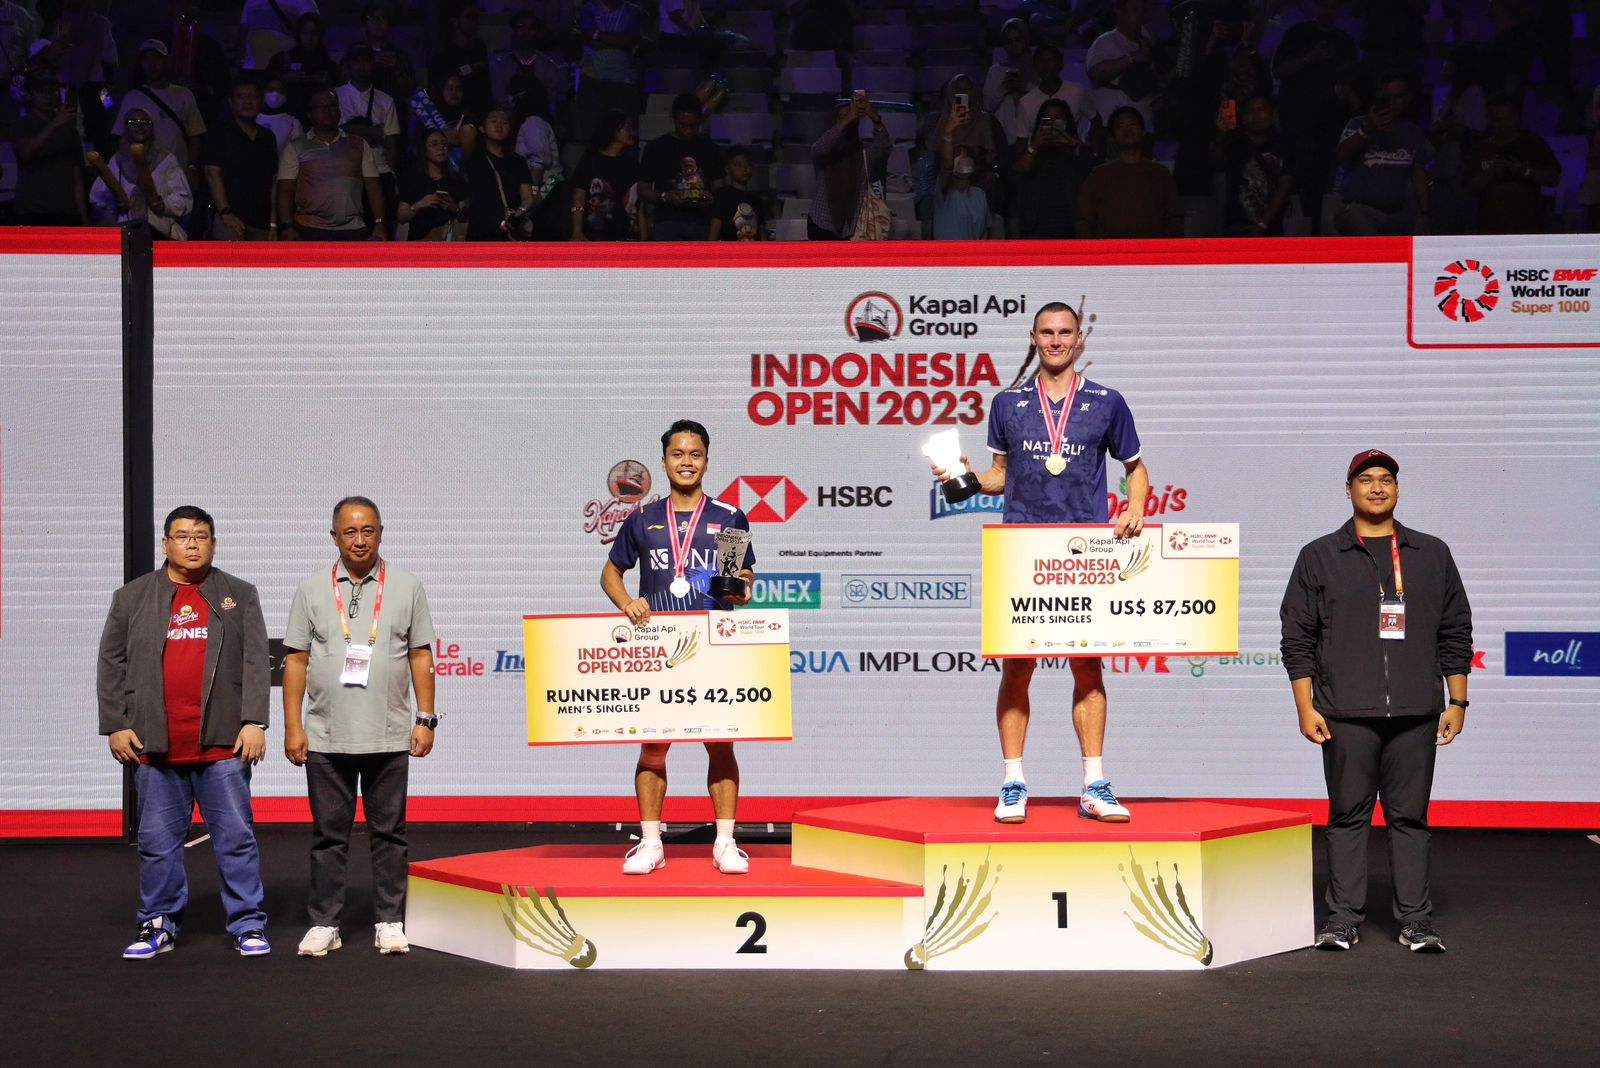 BNI sangat mengapresiasi perjuangan Ginting yang berhasil mencapai partai puncak dalam gelaran Indonesia Open 2023.